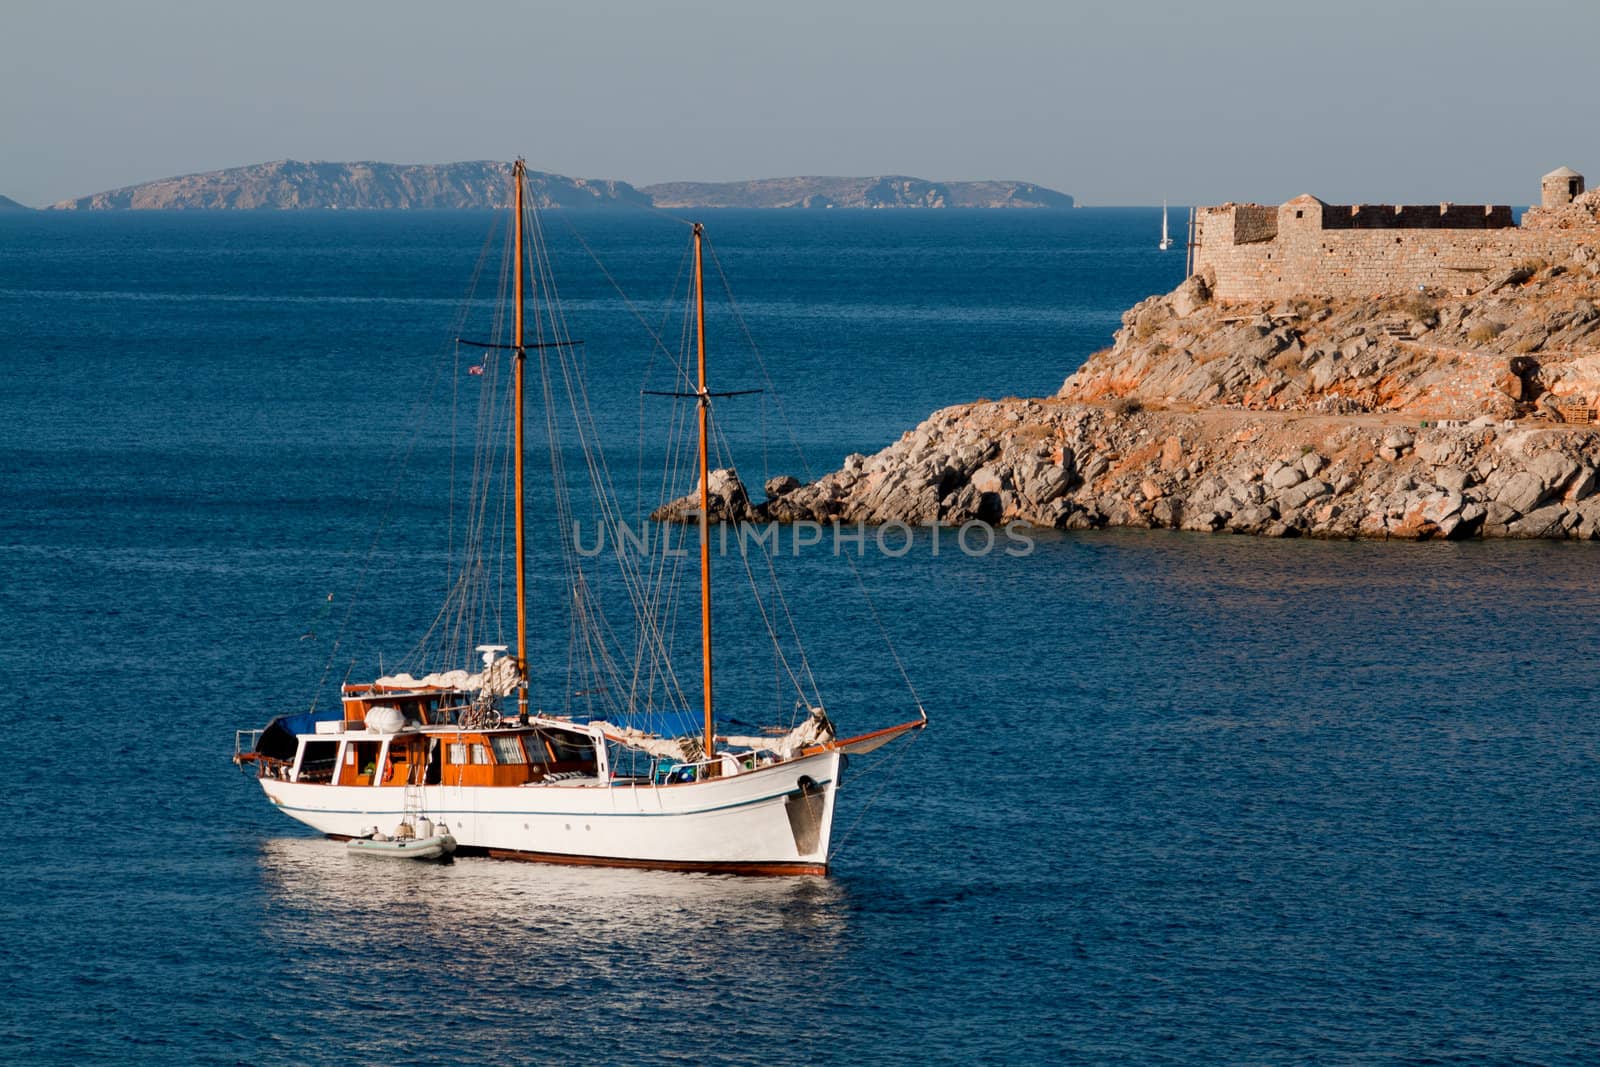 Yacht near Hydros island, Greece by vilevi